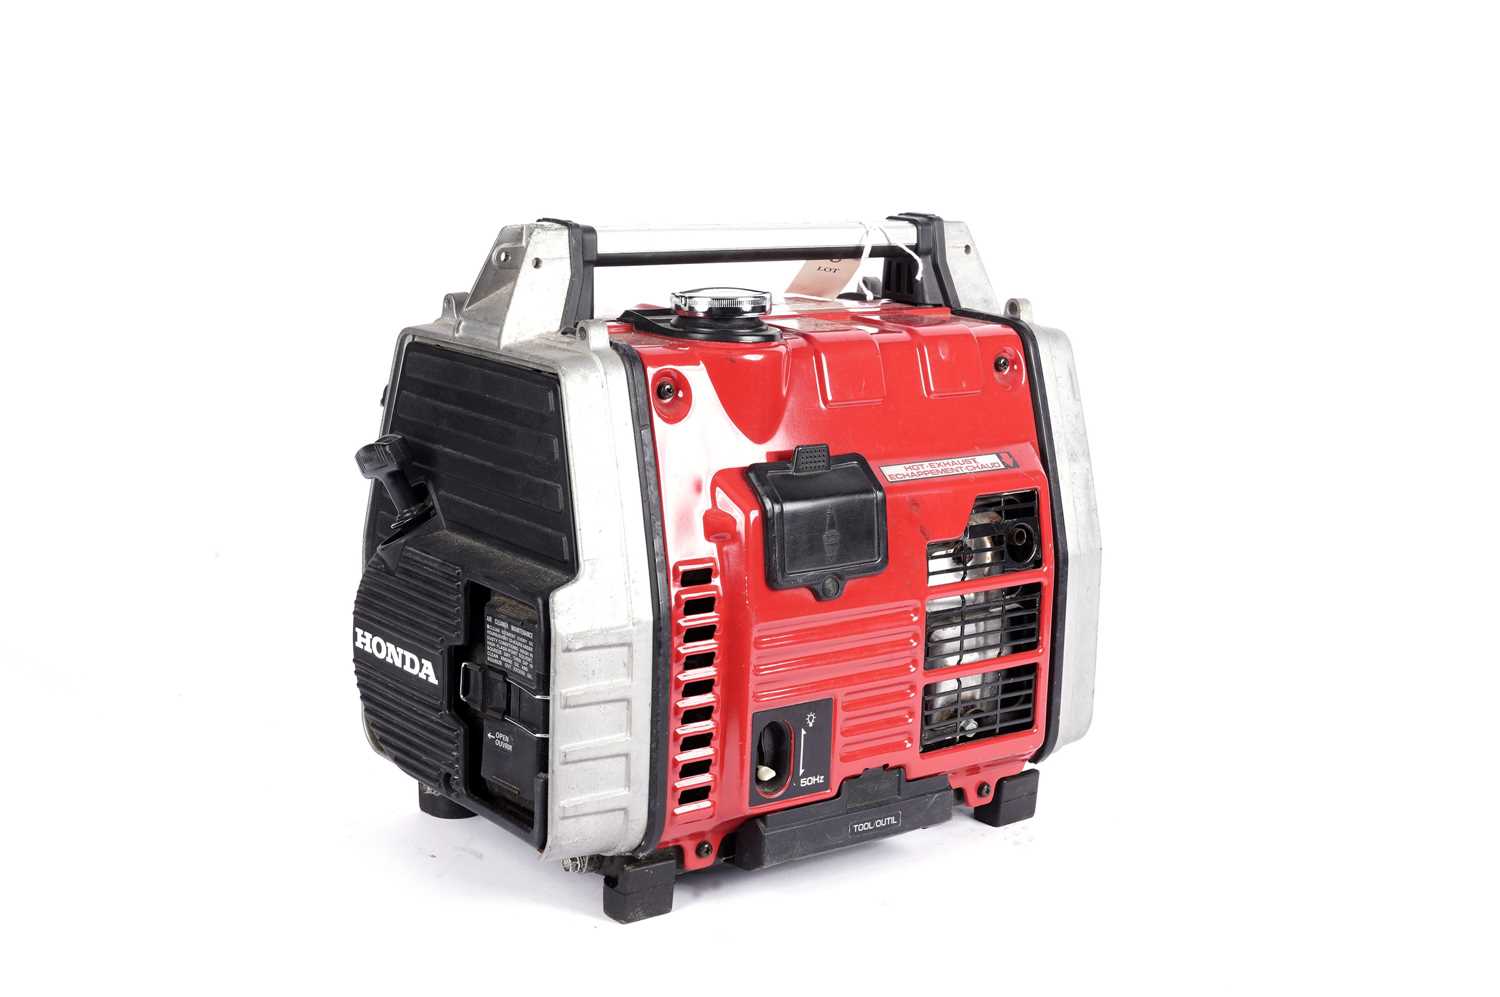 A Honda EM650 portable generator - Image 2 of 10